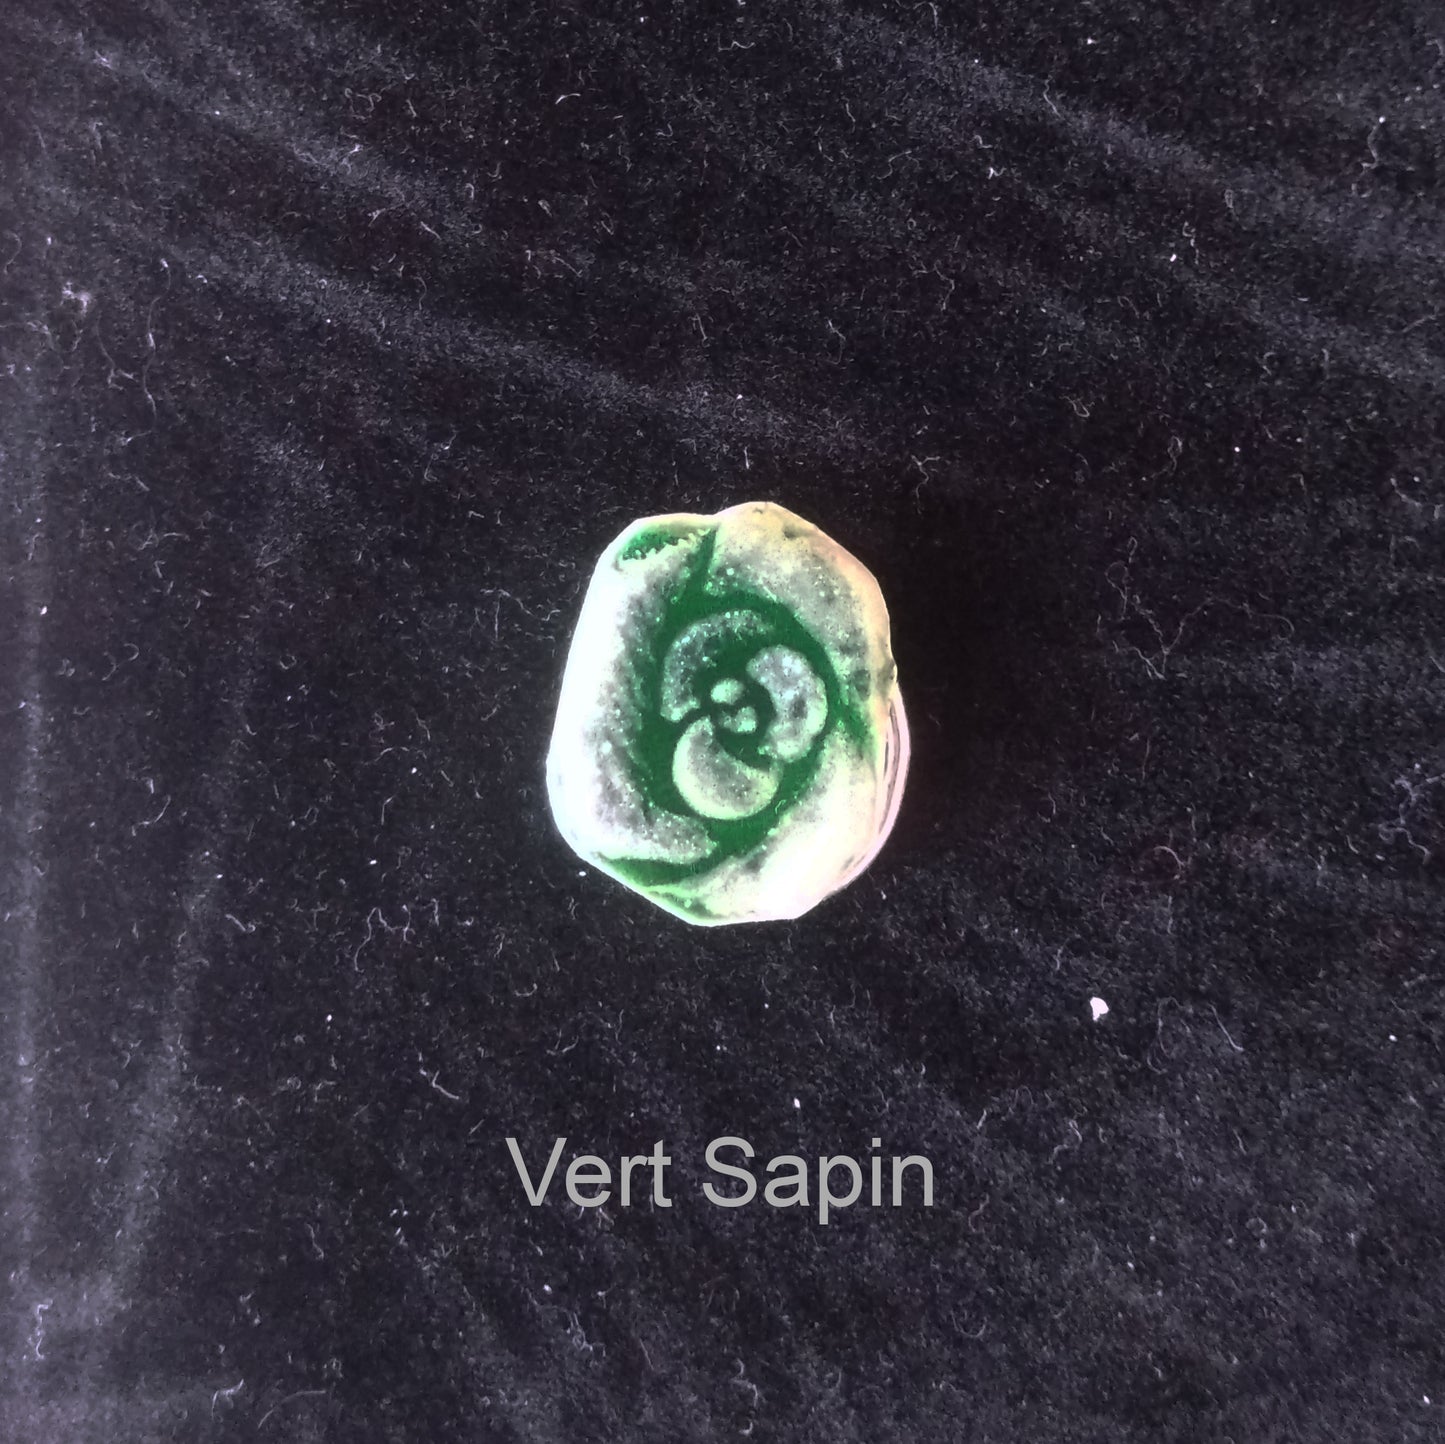 Mini Broche en argent 925/1000 émaillée selon la technique de la grisaille Vert Sapin